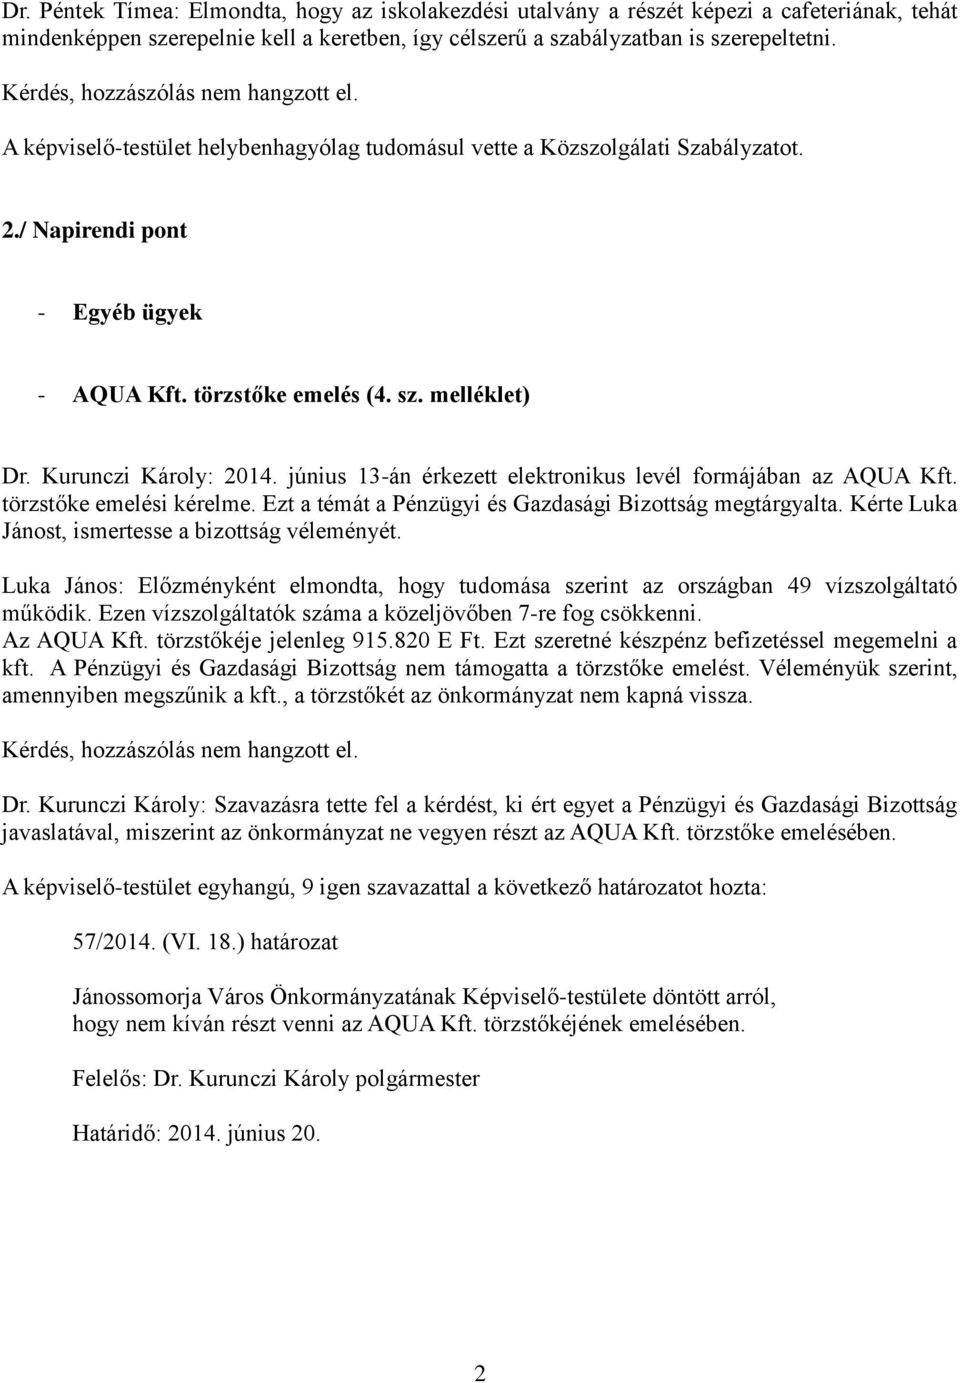 melléklet) Dr. Kurunczi Károly: 2014. június 13-án érkezett elektronikus levél formájában az AQUA Kft. törzstőke emelési kérelme. Ezt a témát a Pénzügyi és Gazdasági Bizottság megtárgyalta.